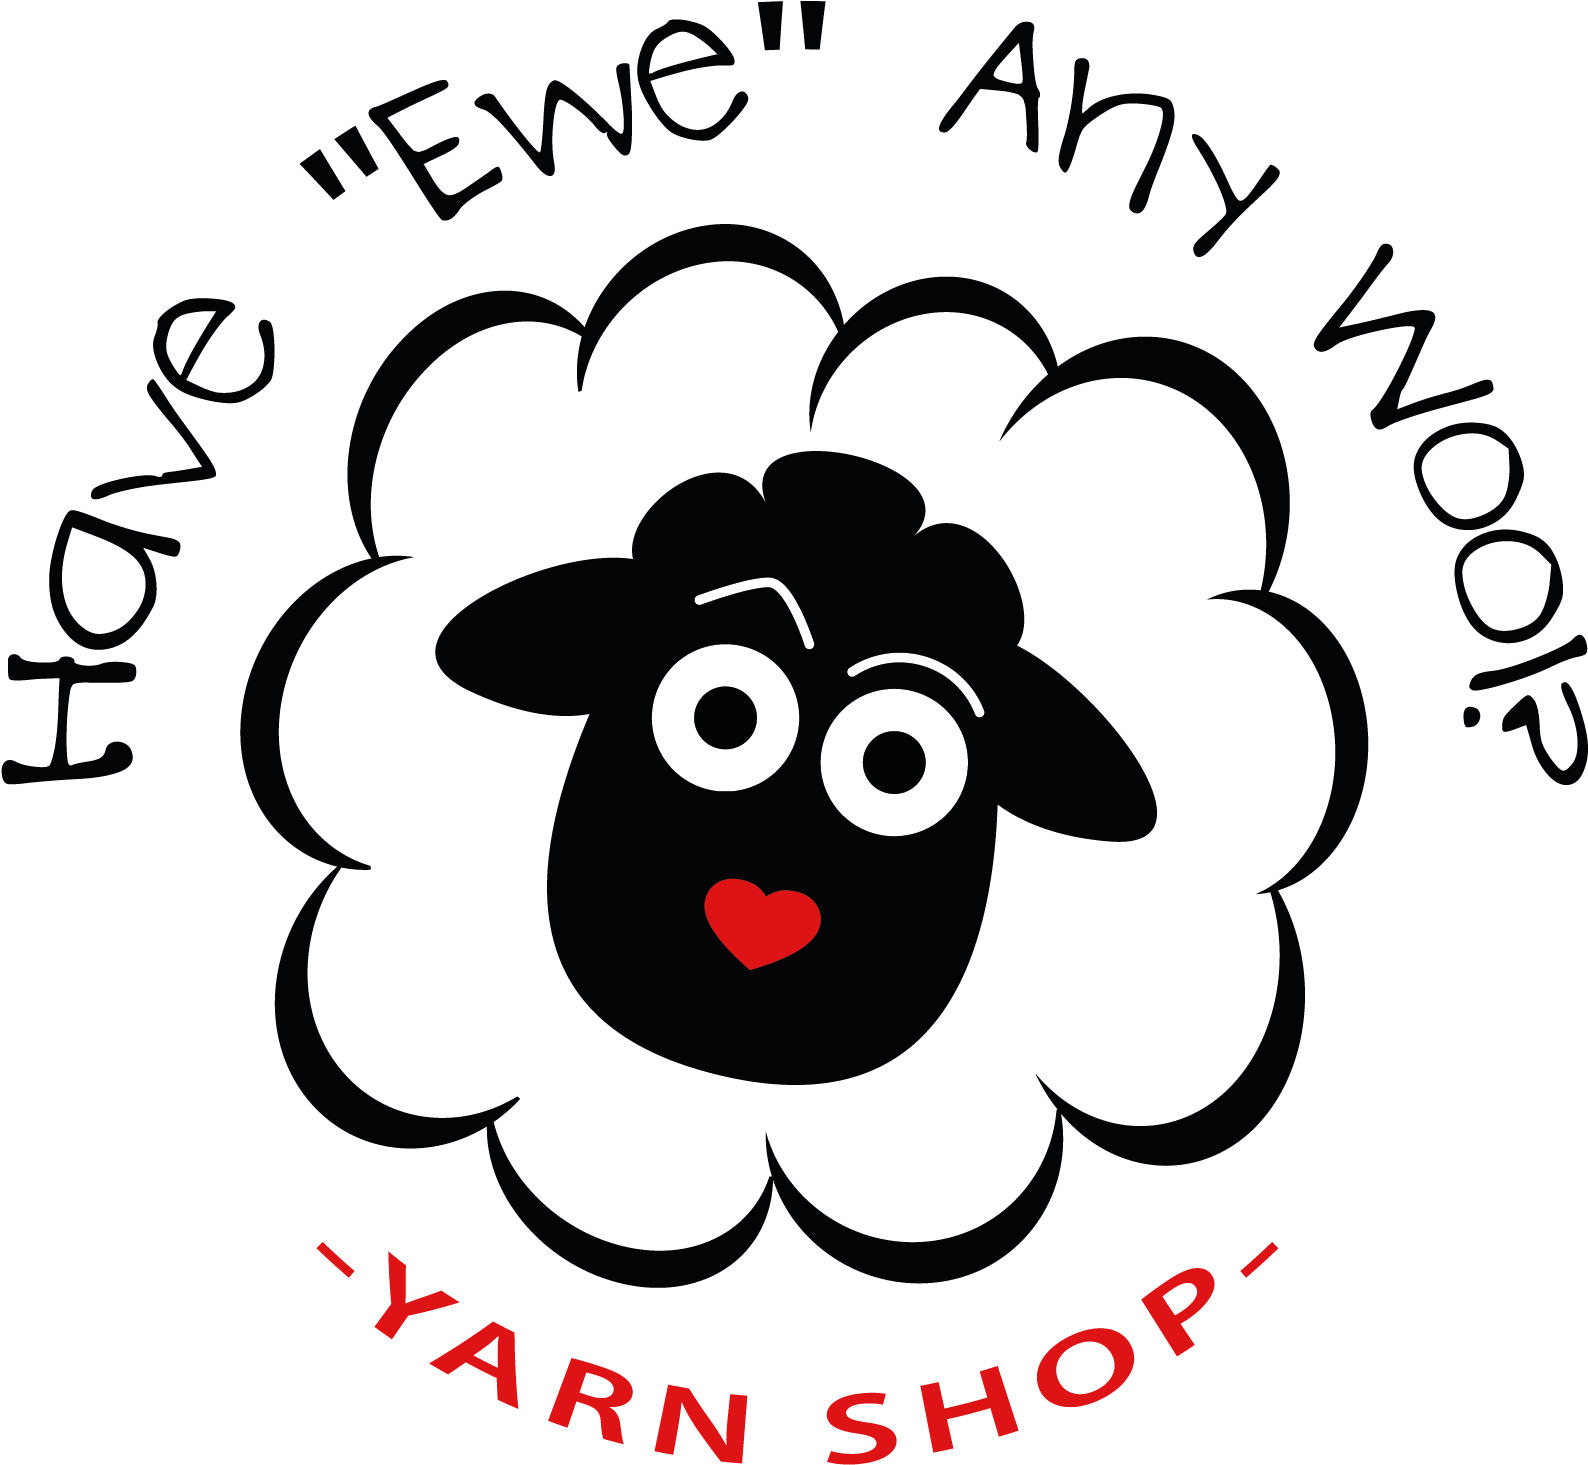 Have Ewe Any Wool Yarn Shop - Have Ewe Any Wool Yarn Shop (1798x1566)